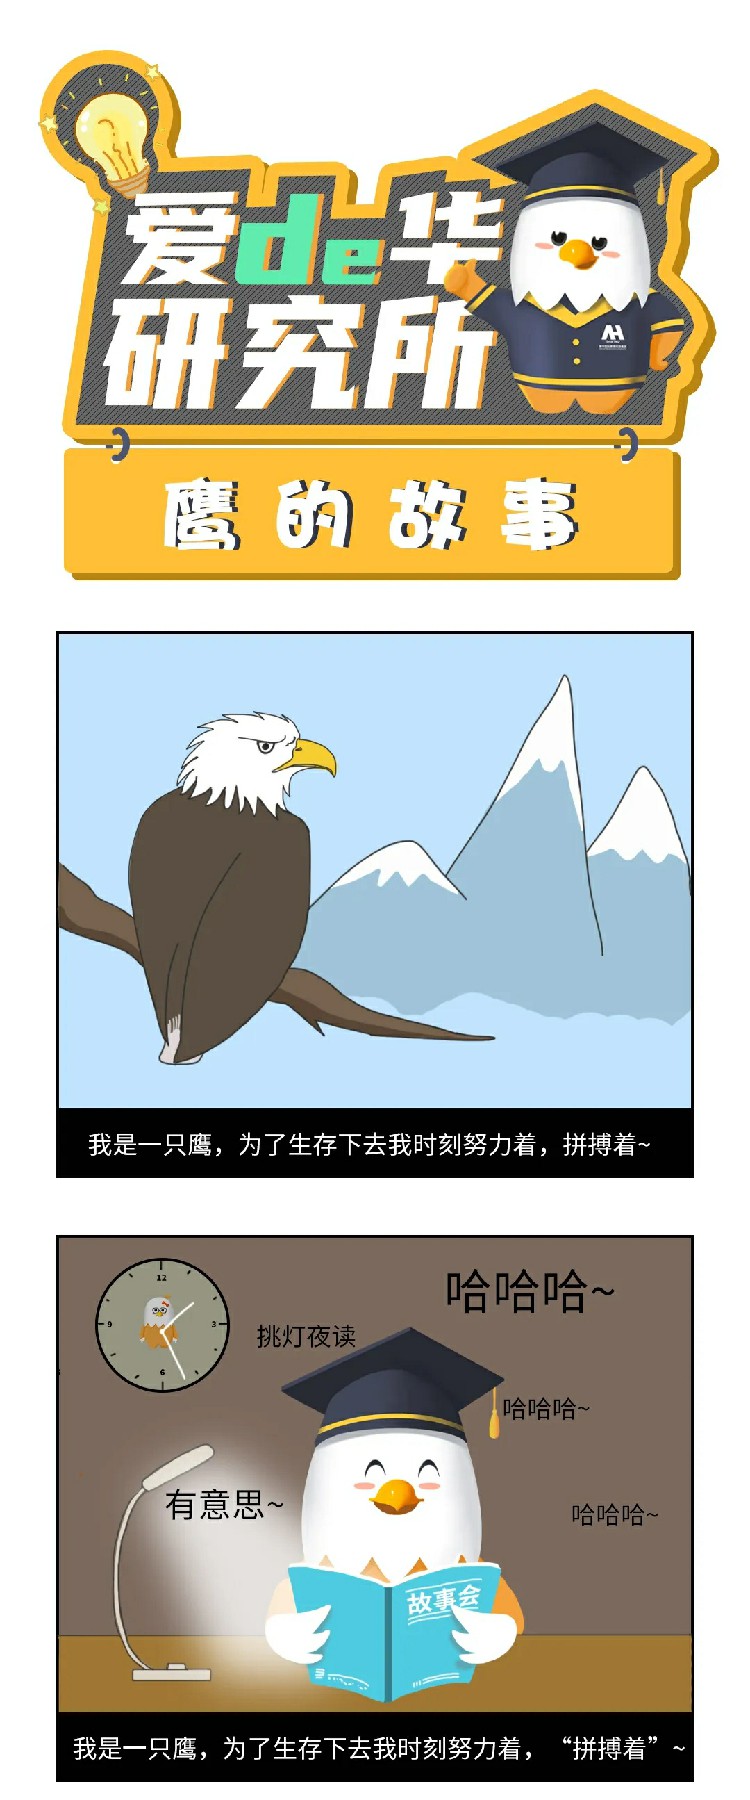 鹰的故事1.webp~1.jpg